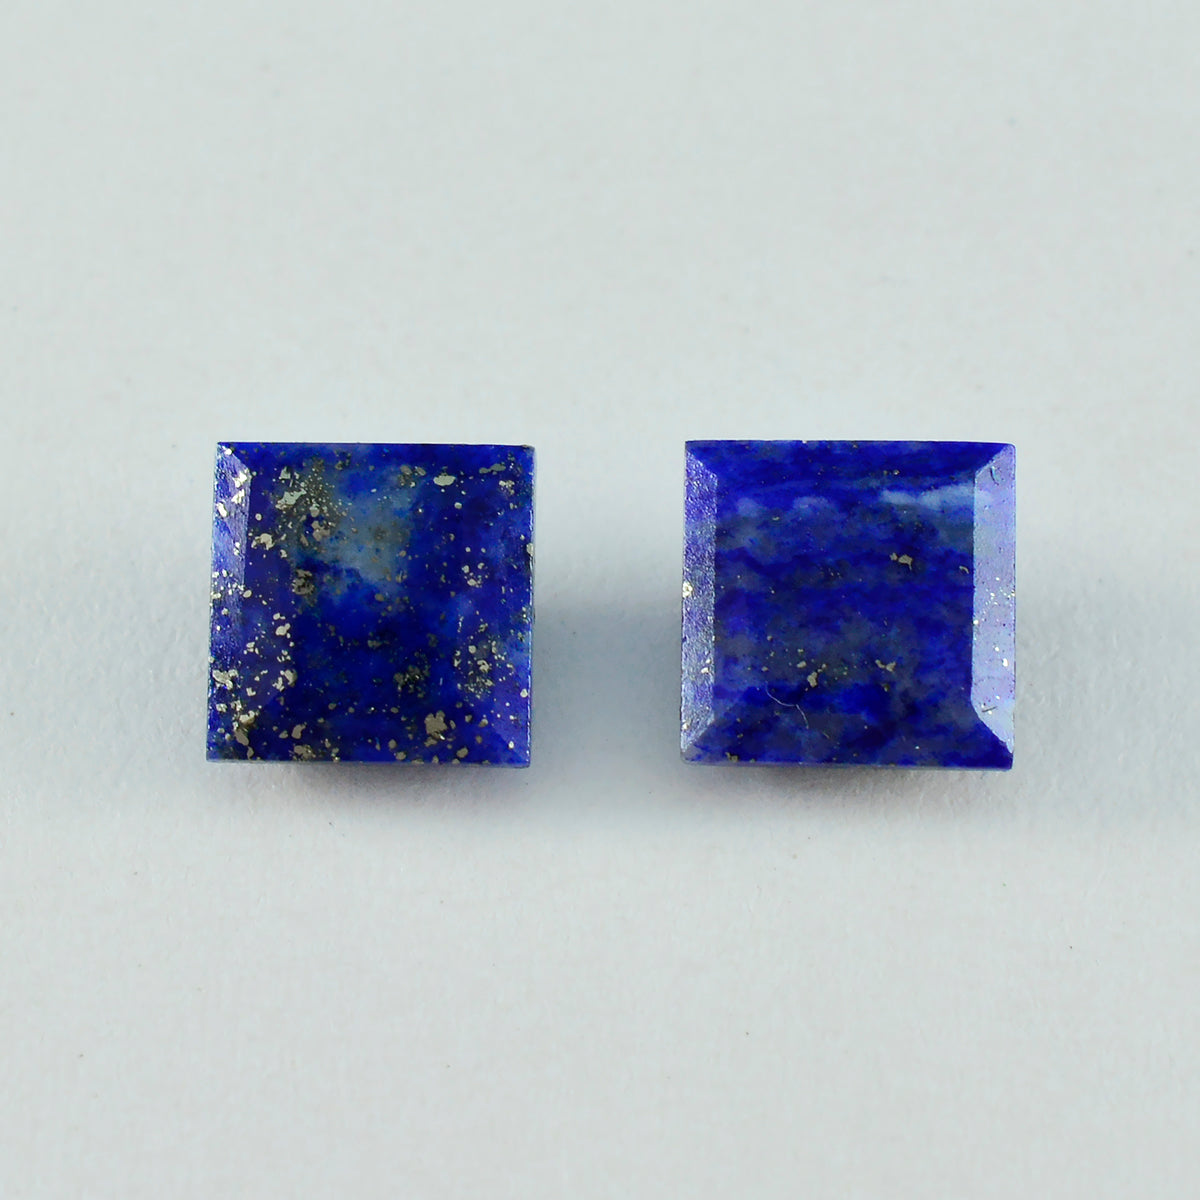 Riyogems, 1 pieza, lapislázuli azul natural facetado, 11x11mm, forma cuadrada, gemas sueltas de buena calidad